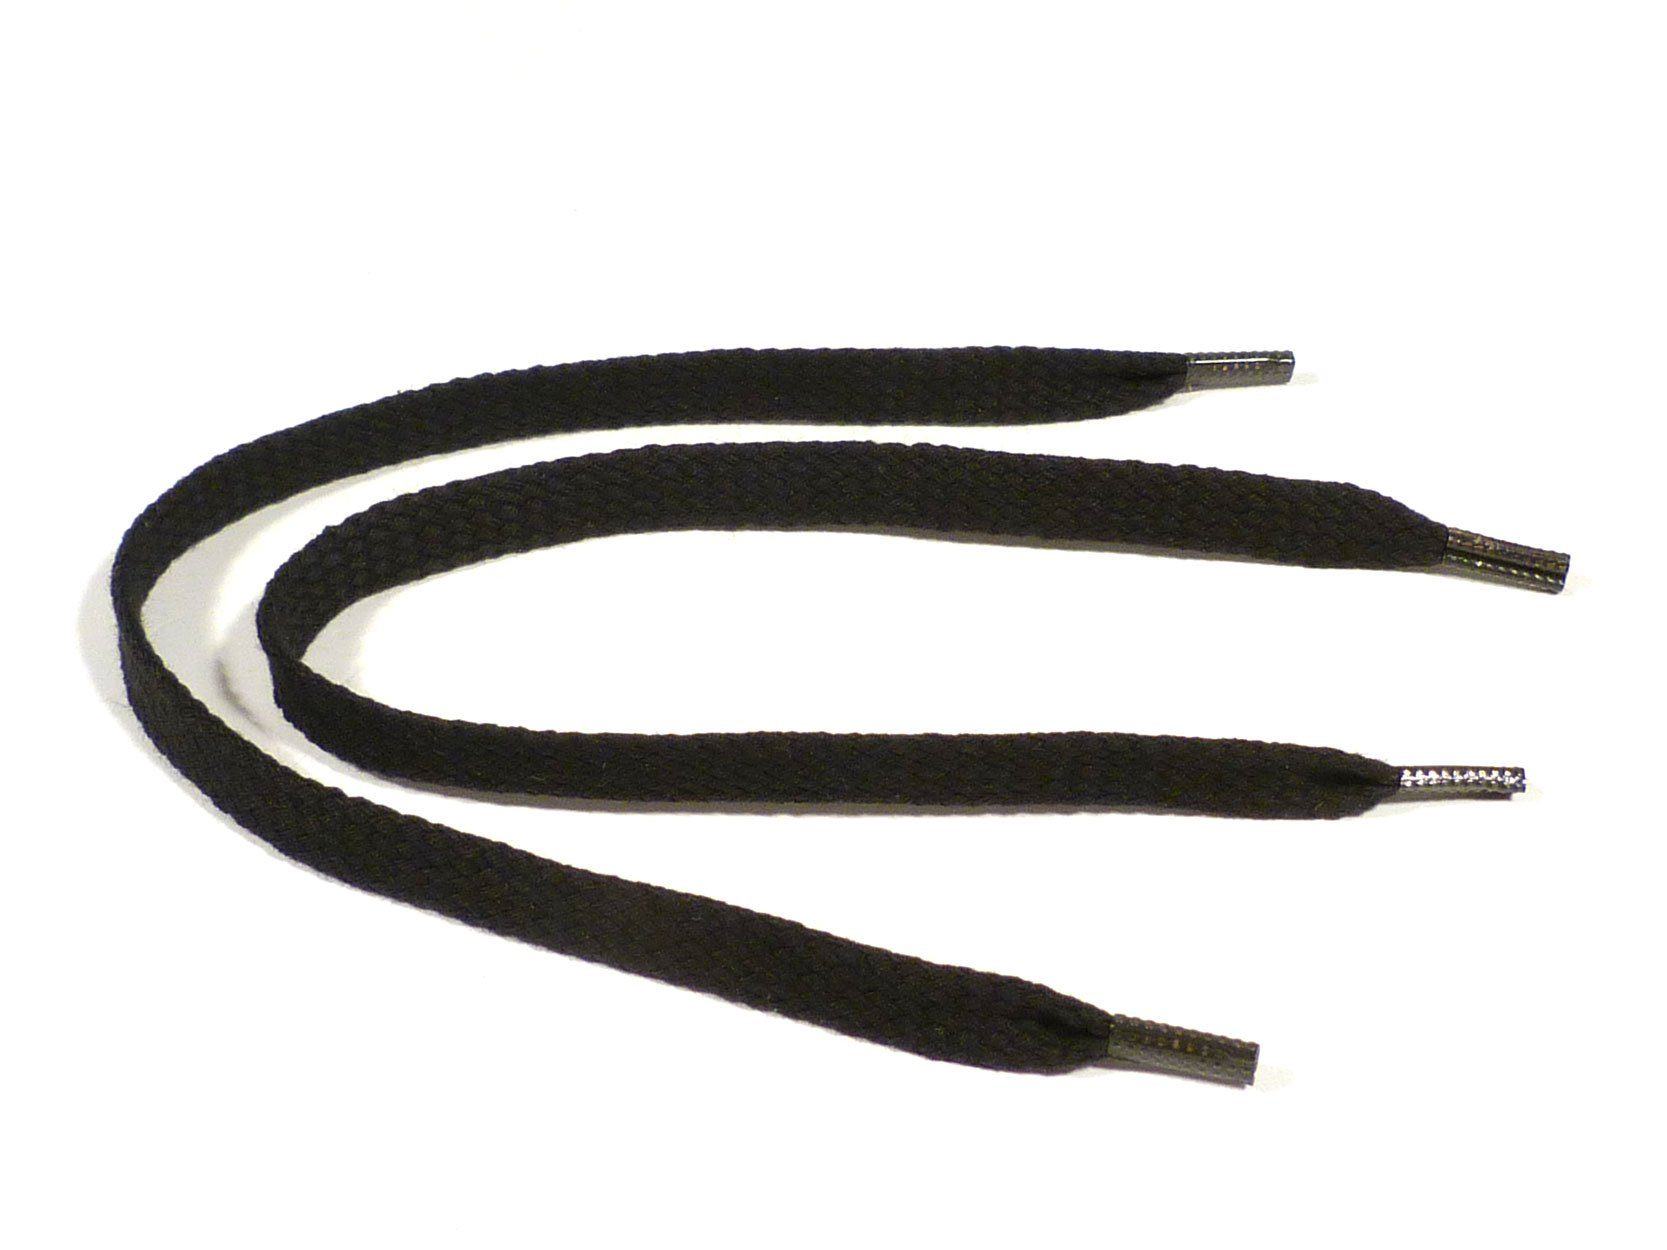 Rema Schnürsenkel Rema Schnürsenkel Schwarz - flach - ca. 6-7 mm breit für Sie nach Wunschlänge geschnitten und mit Metallenden versehen